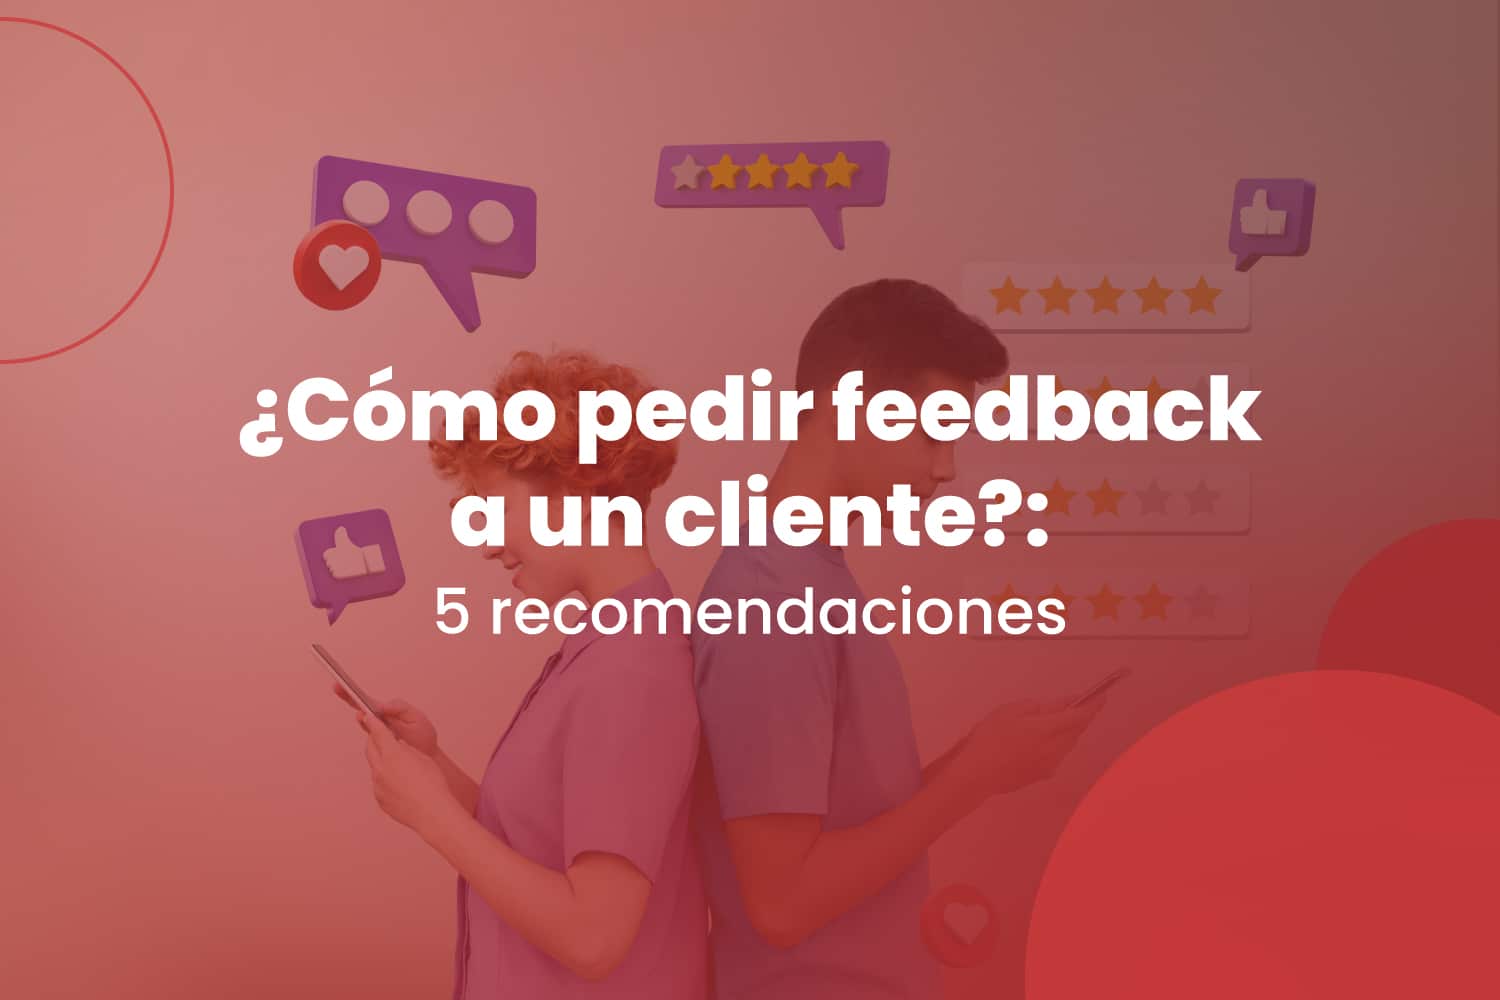 ¿Cómo pedir feedback a un cliente?: 5 recomendaciones